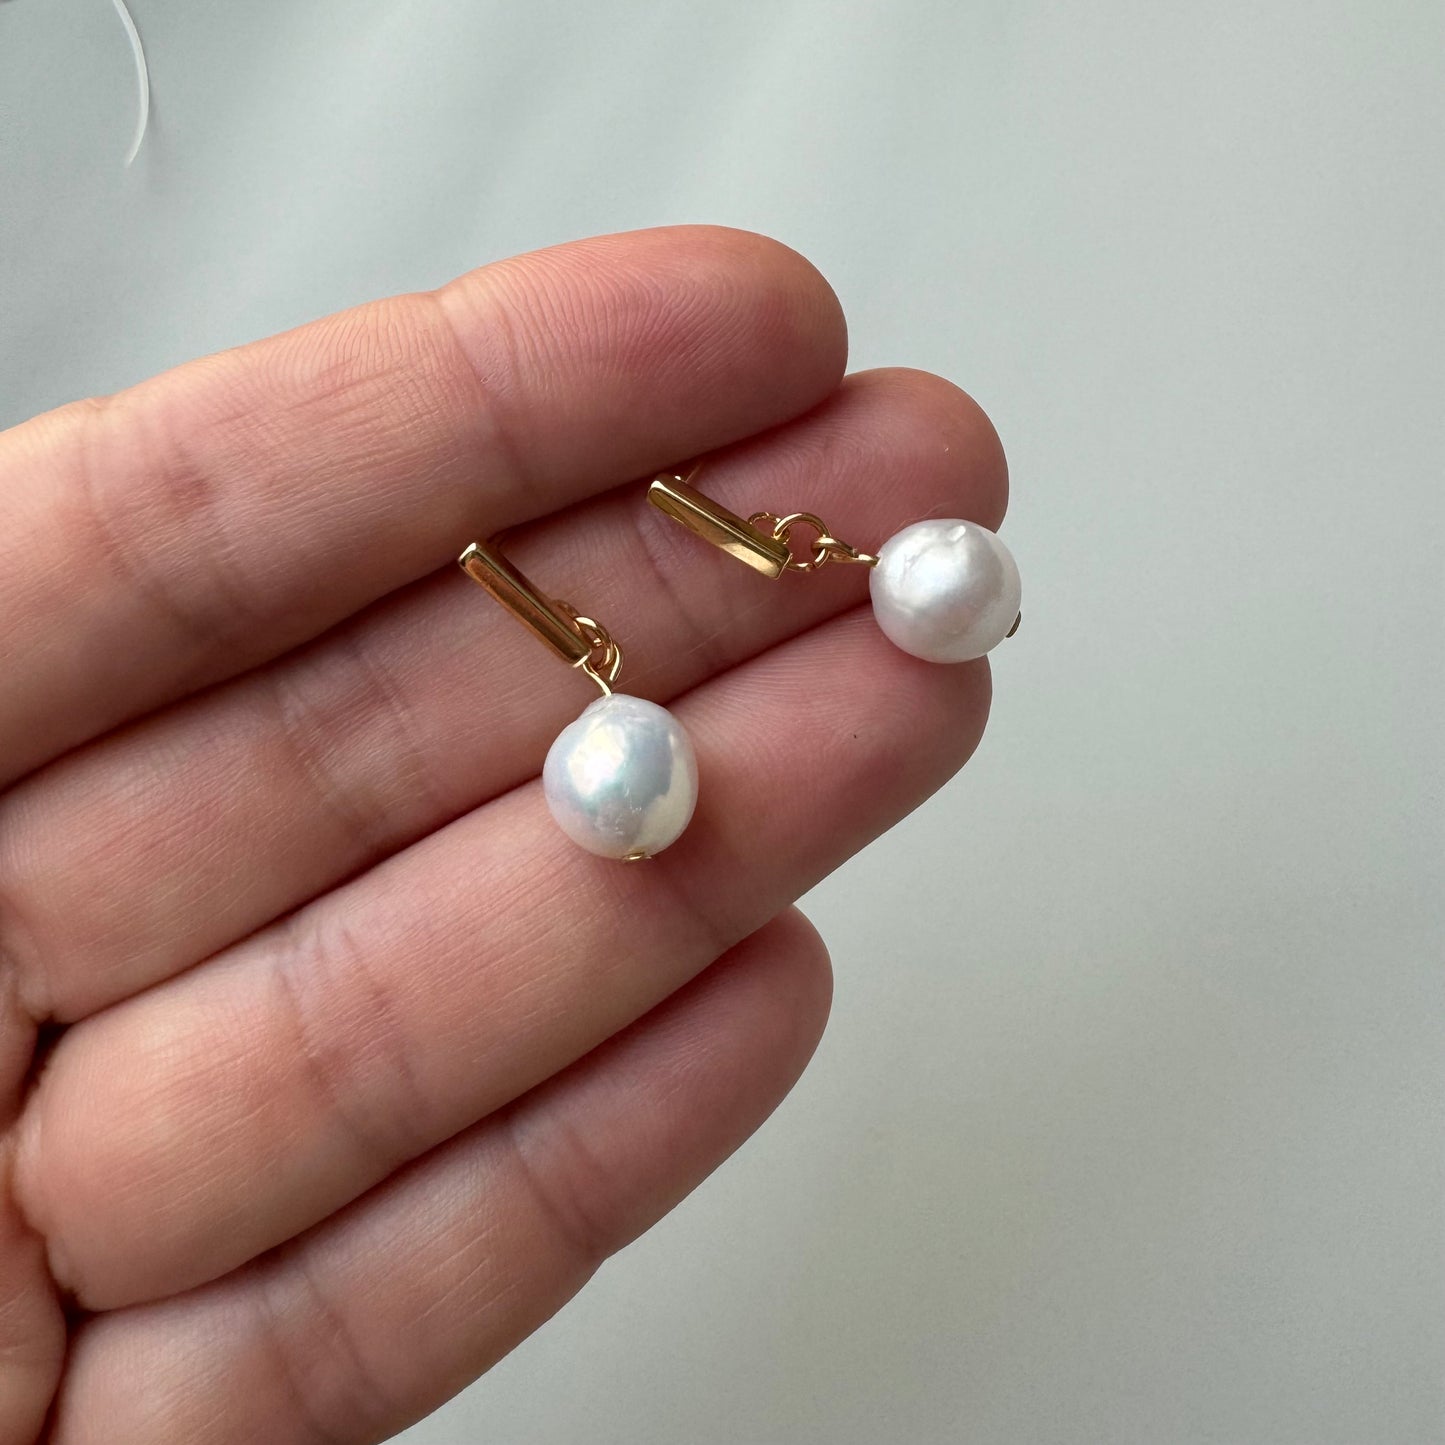 Single pearl everyday earrings